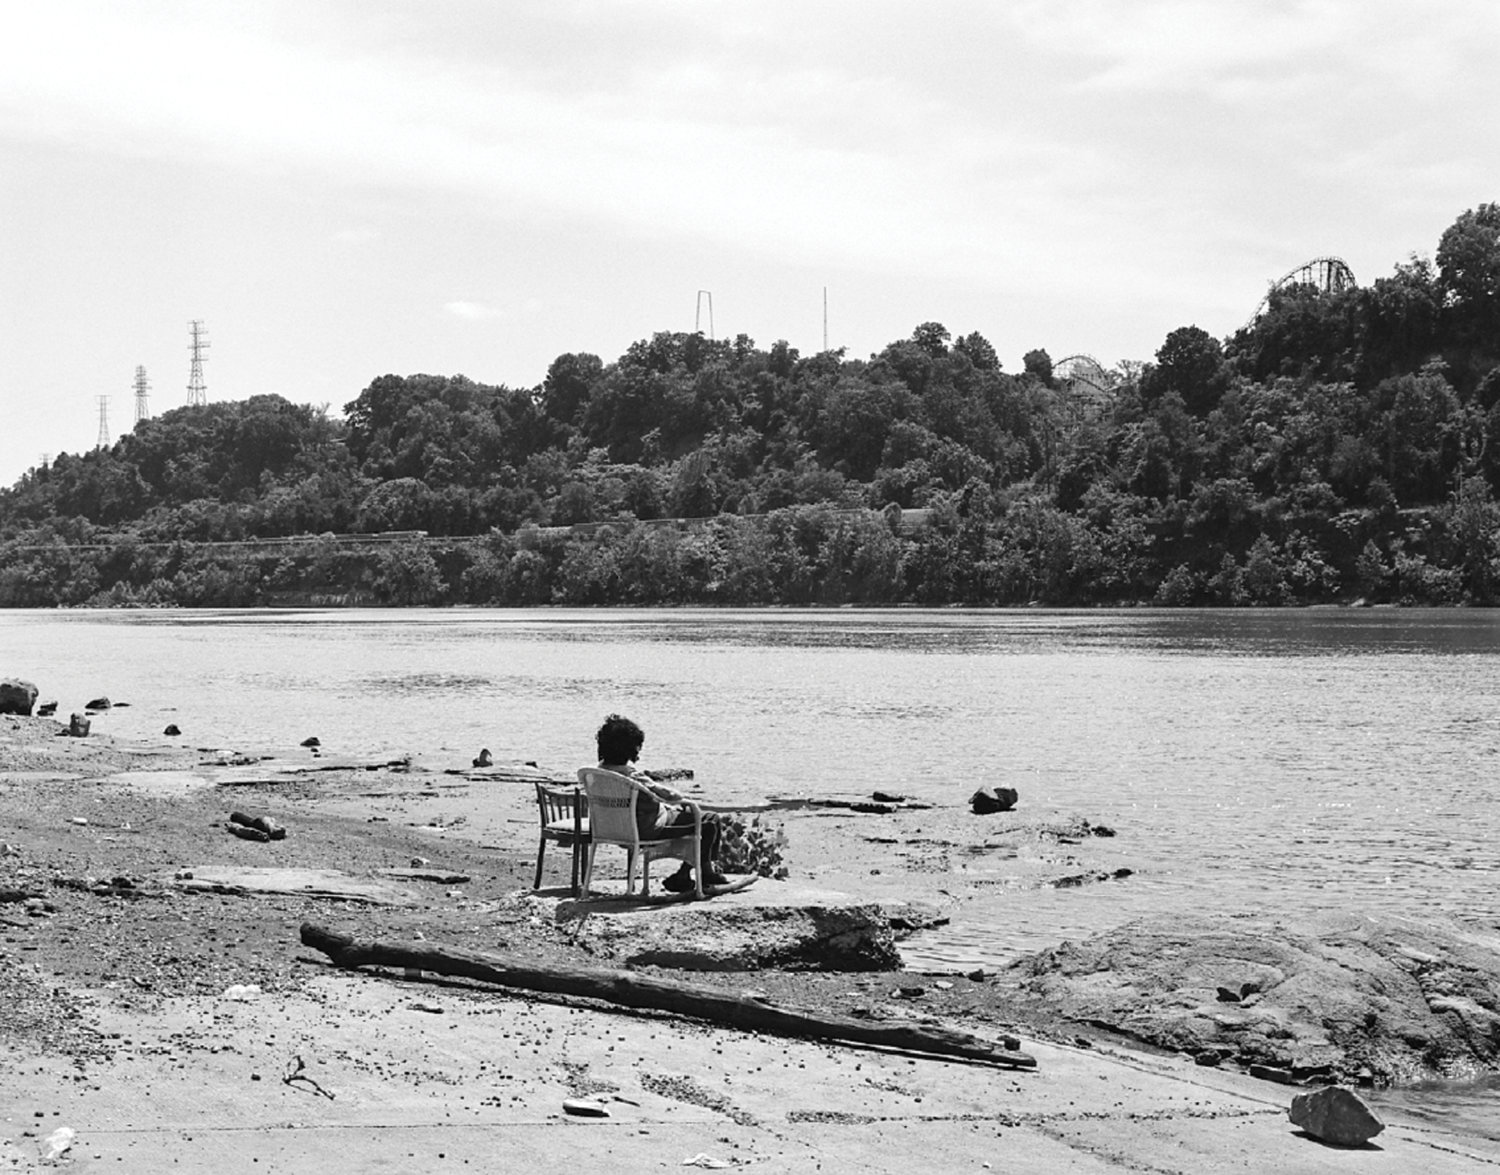 Schwarz-Weiß-Fotografie von einem Gewässer, eine Person sitzt davor auf einem Stuhl und blickt auf das Wasser, im Hintergrund sind Bäume zu sehen